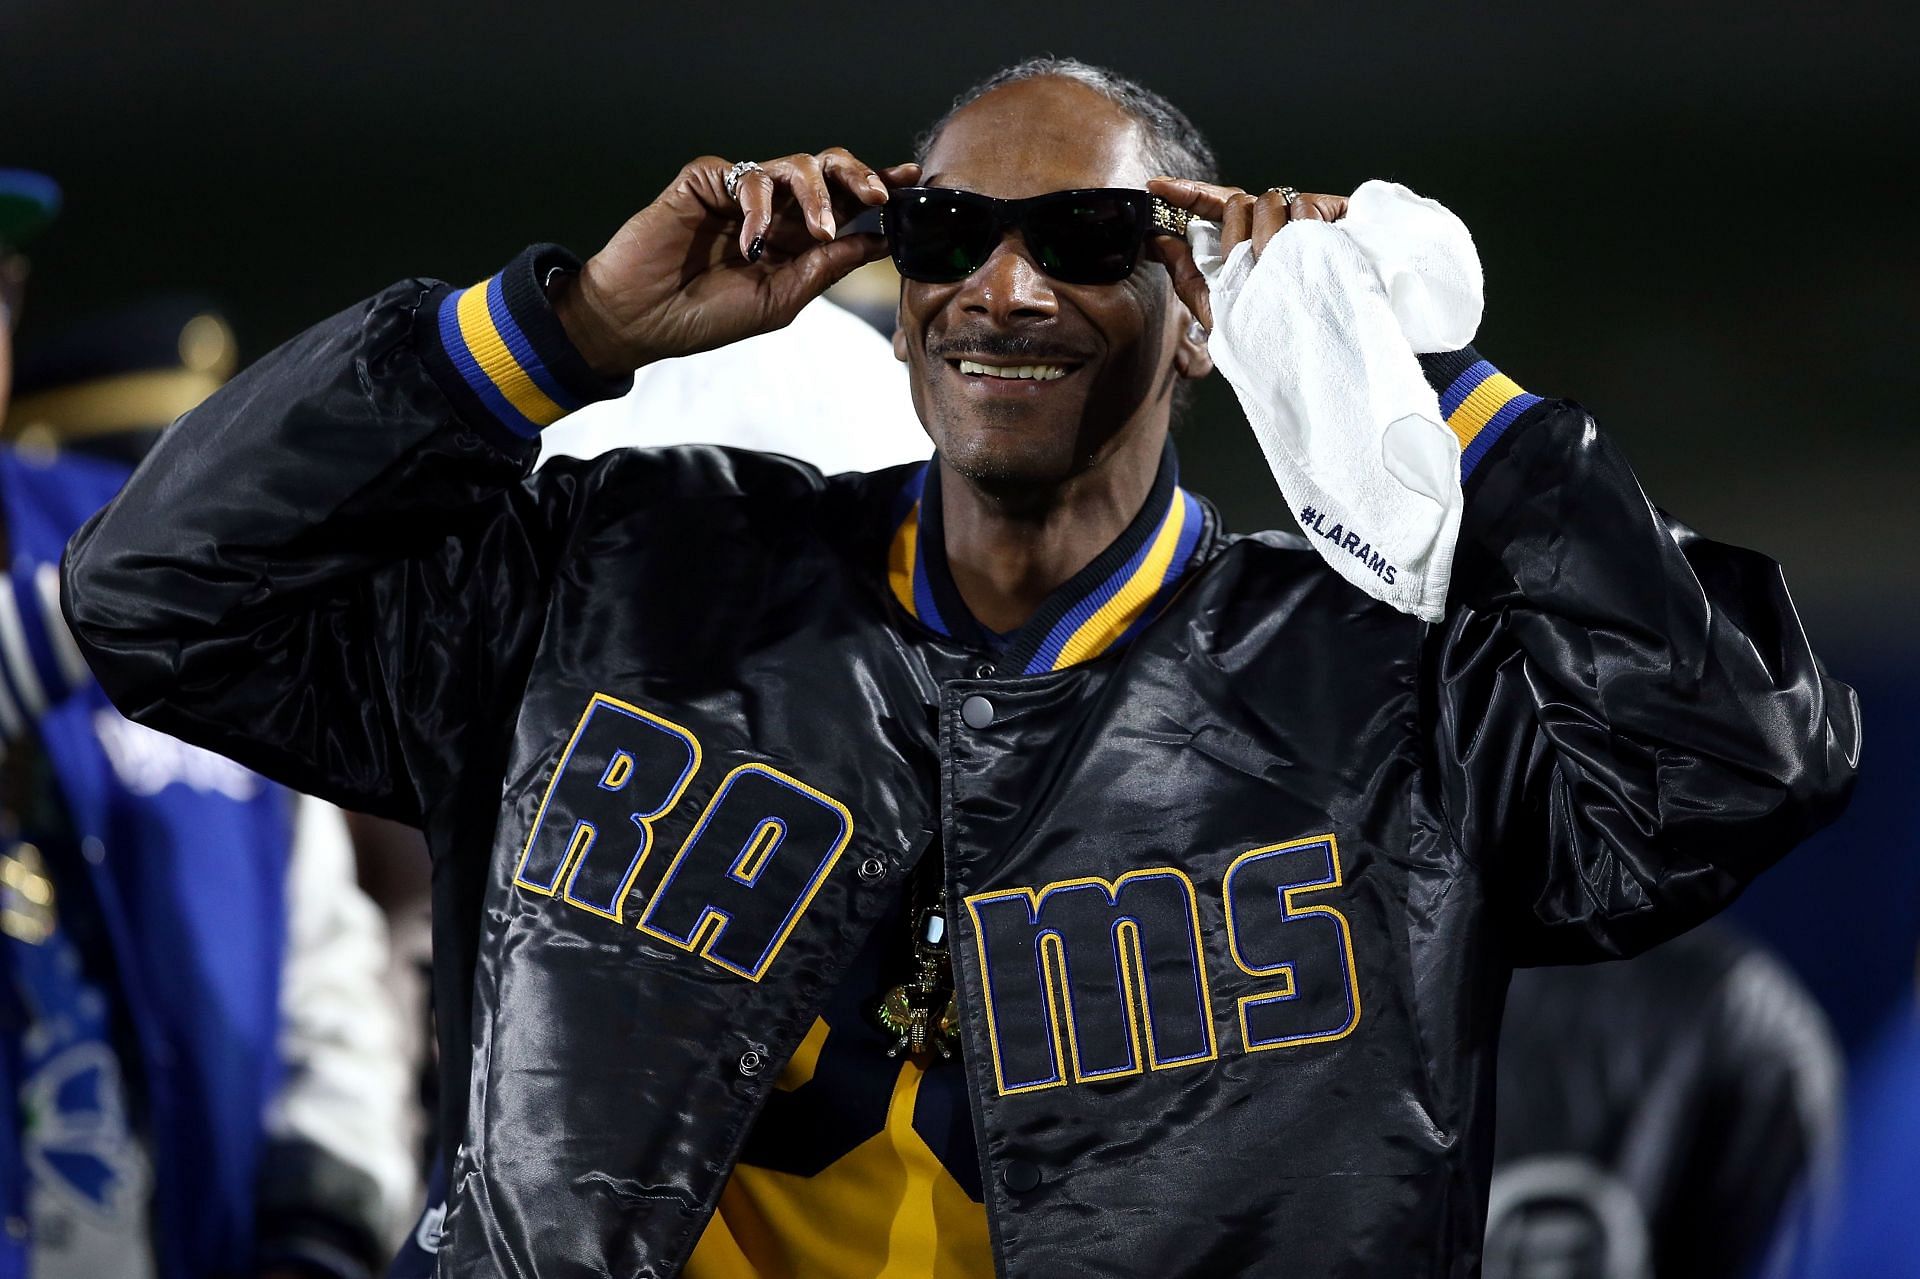 Legendary musical artist Snoop Dogg